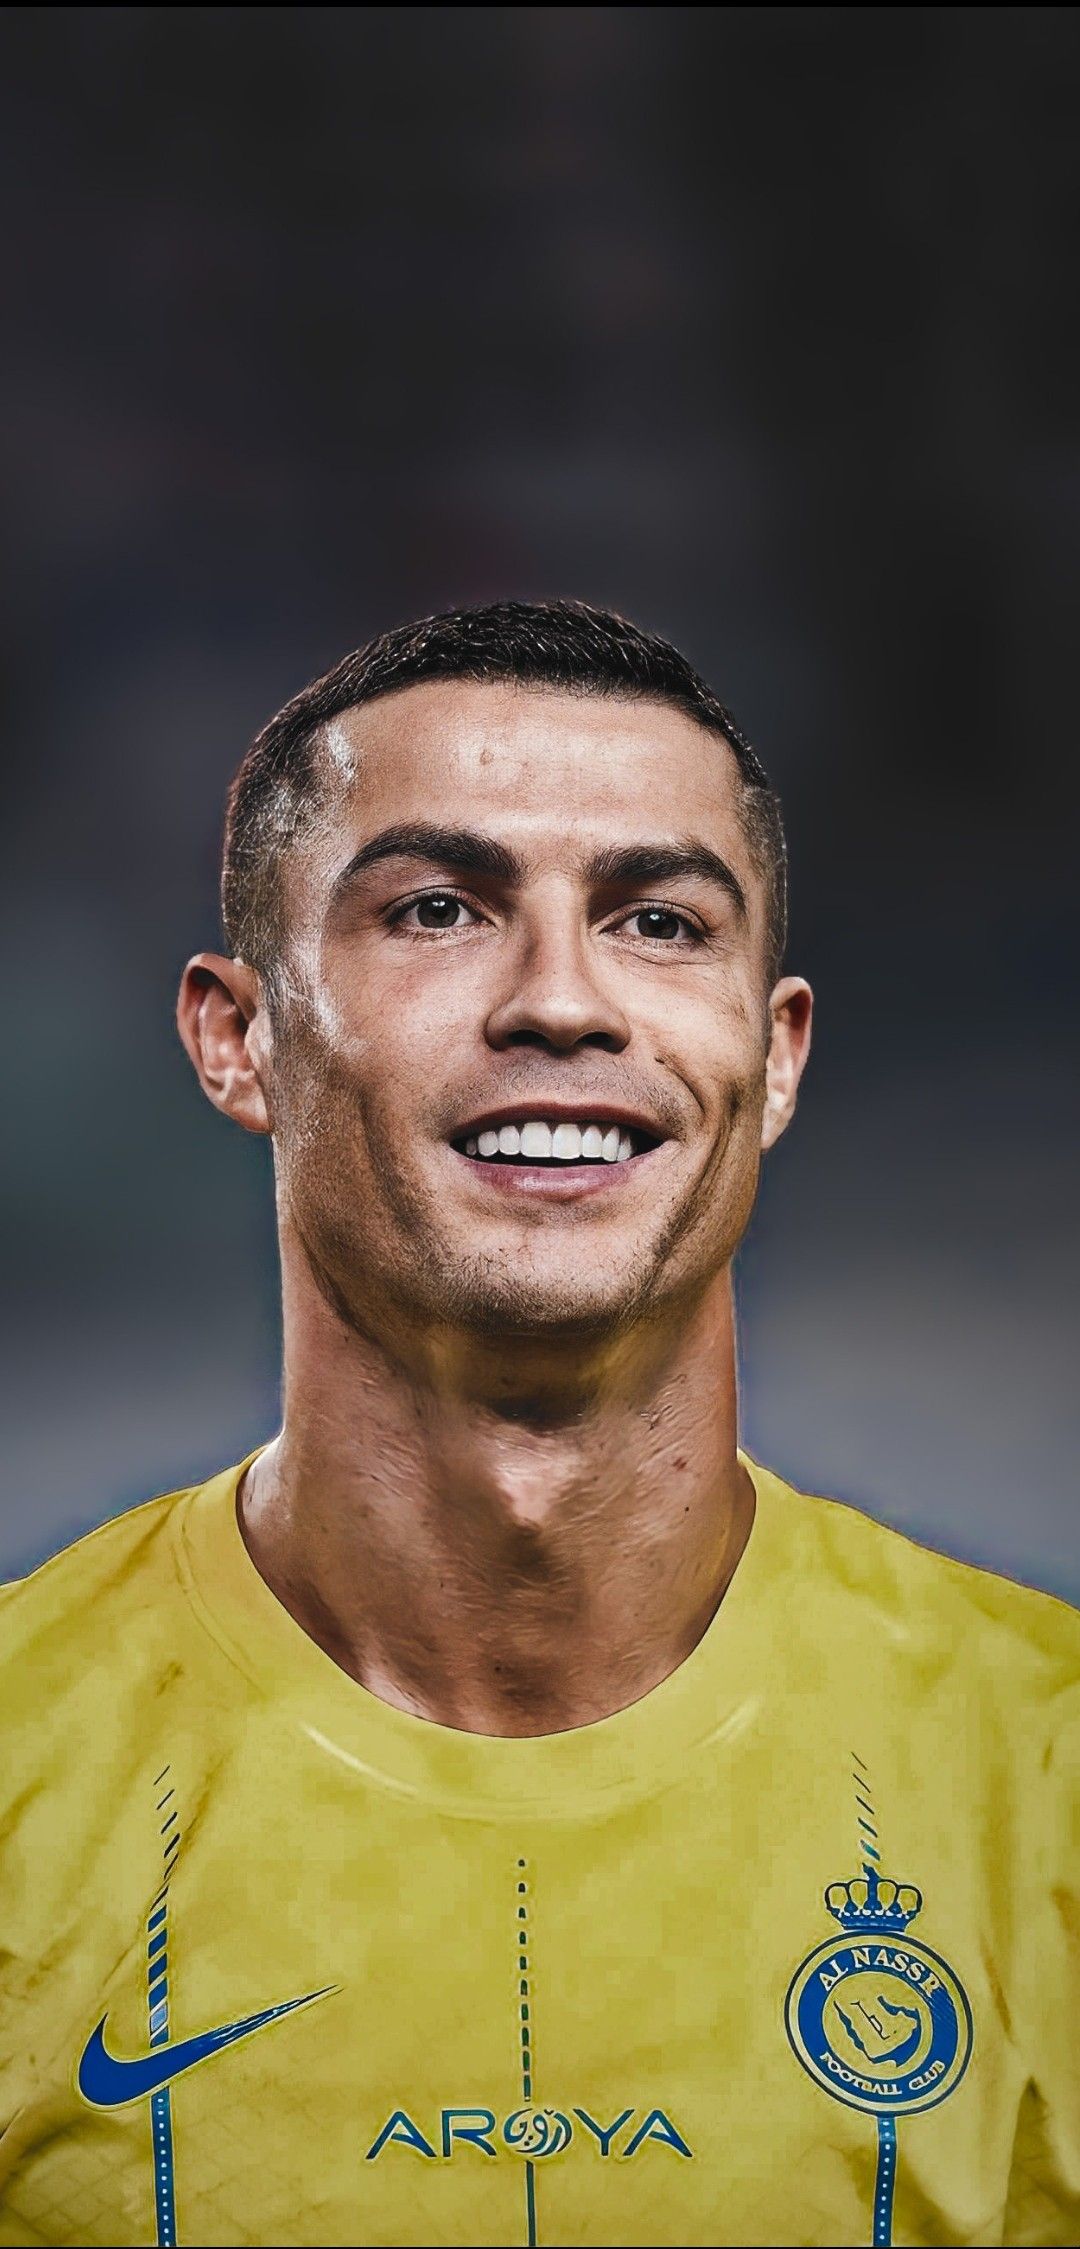 Cristiano Ronaldo wallpapers 4k - Portuguese Power Play: Cristiano Ronaldo 4K Wallpaper Fiesta